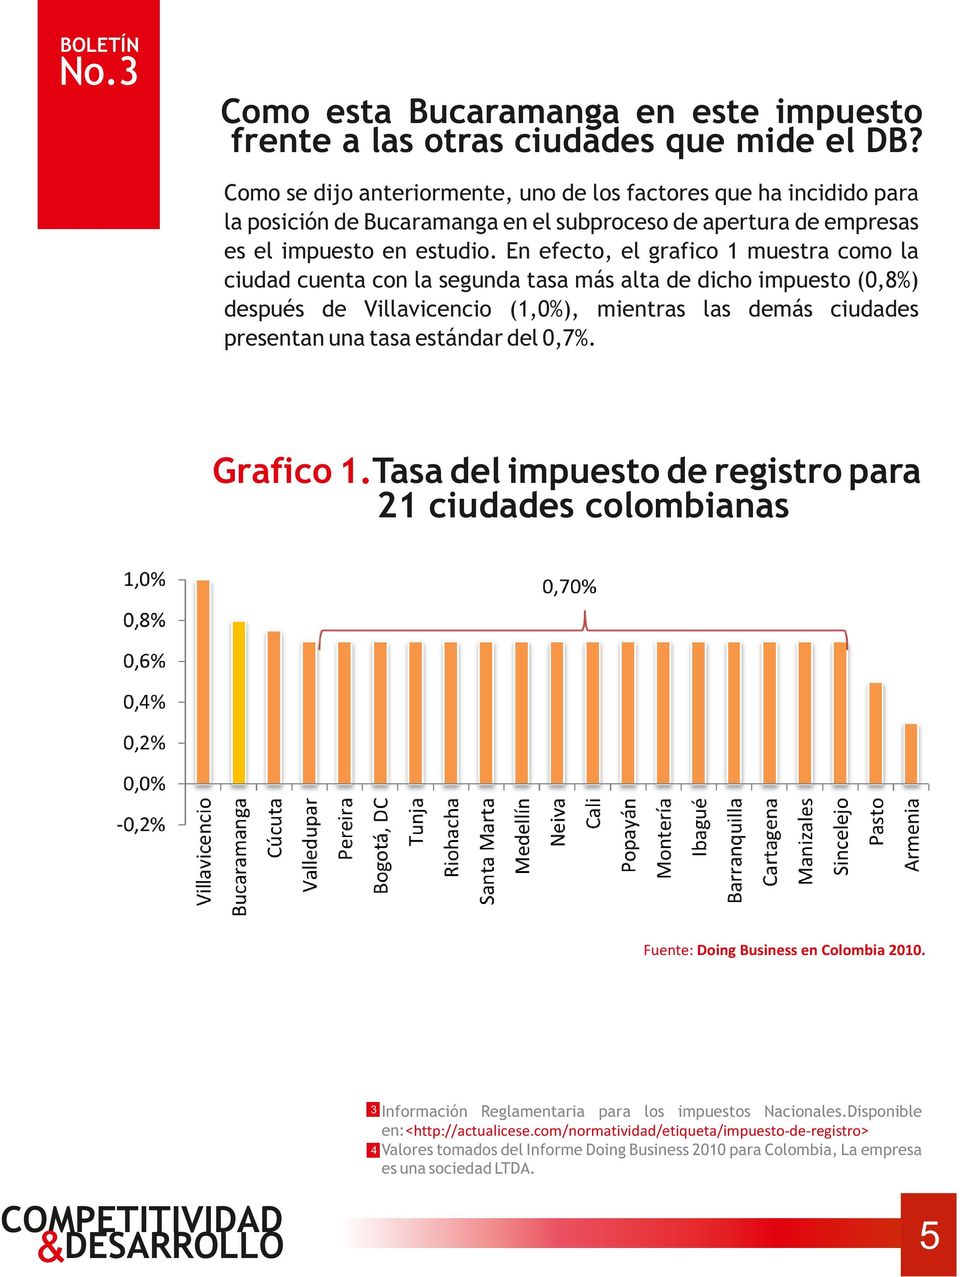 En efecto, el grafico 1 muestra como la ciudad cuenta con la segunda tasa más alta de dicho impuesto (0,8%) después de Villavicencio (1,0%), mientras las demás ciudades presentan una tasa estándar